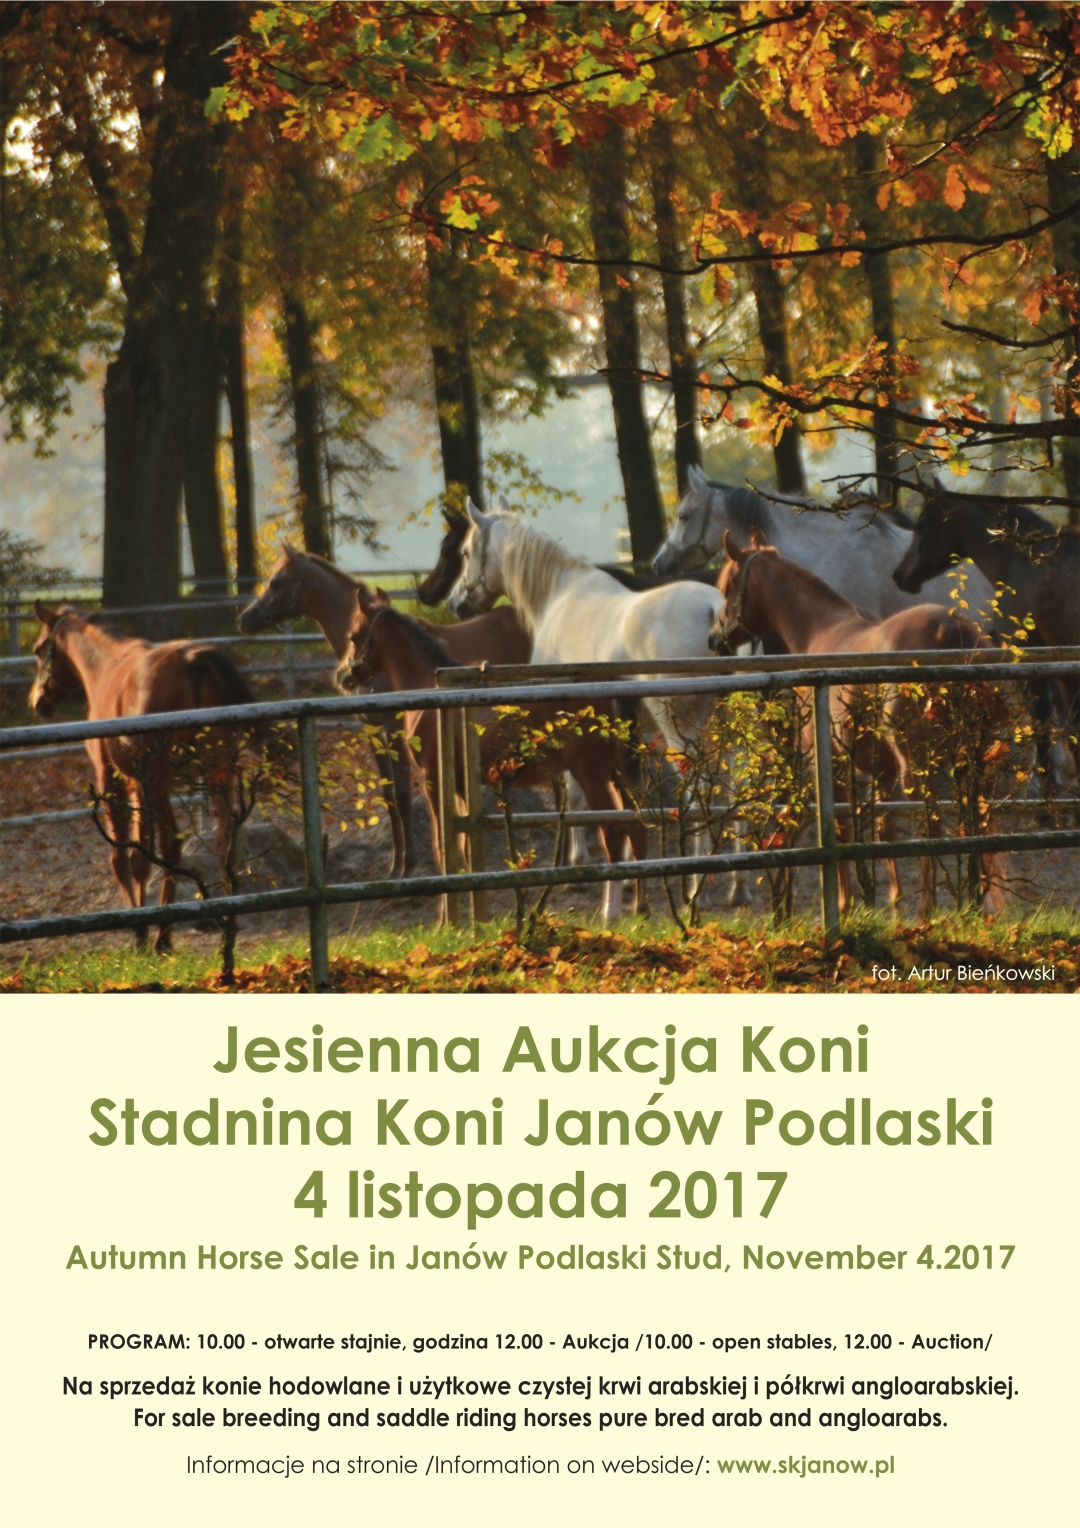 Jesienna Aukcja Koni / Autumn Horse Sale – 04.11.2017